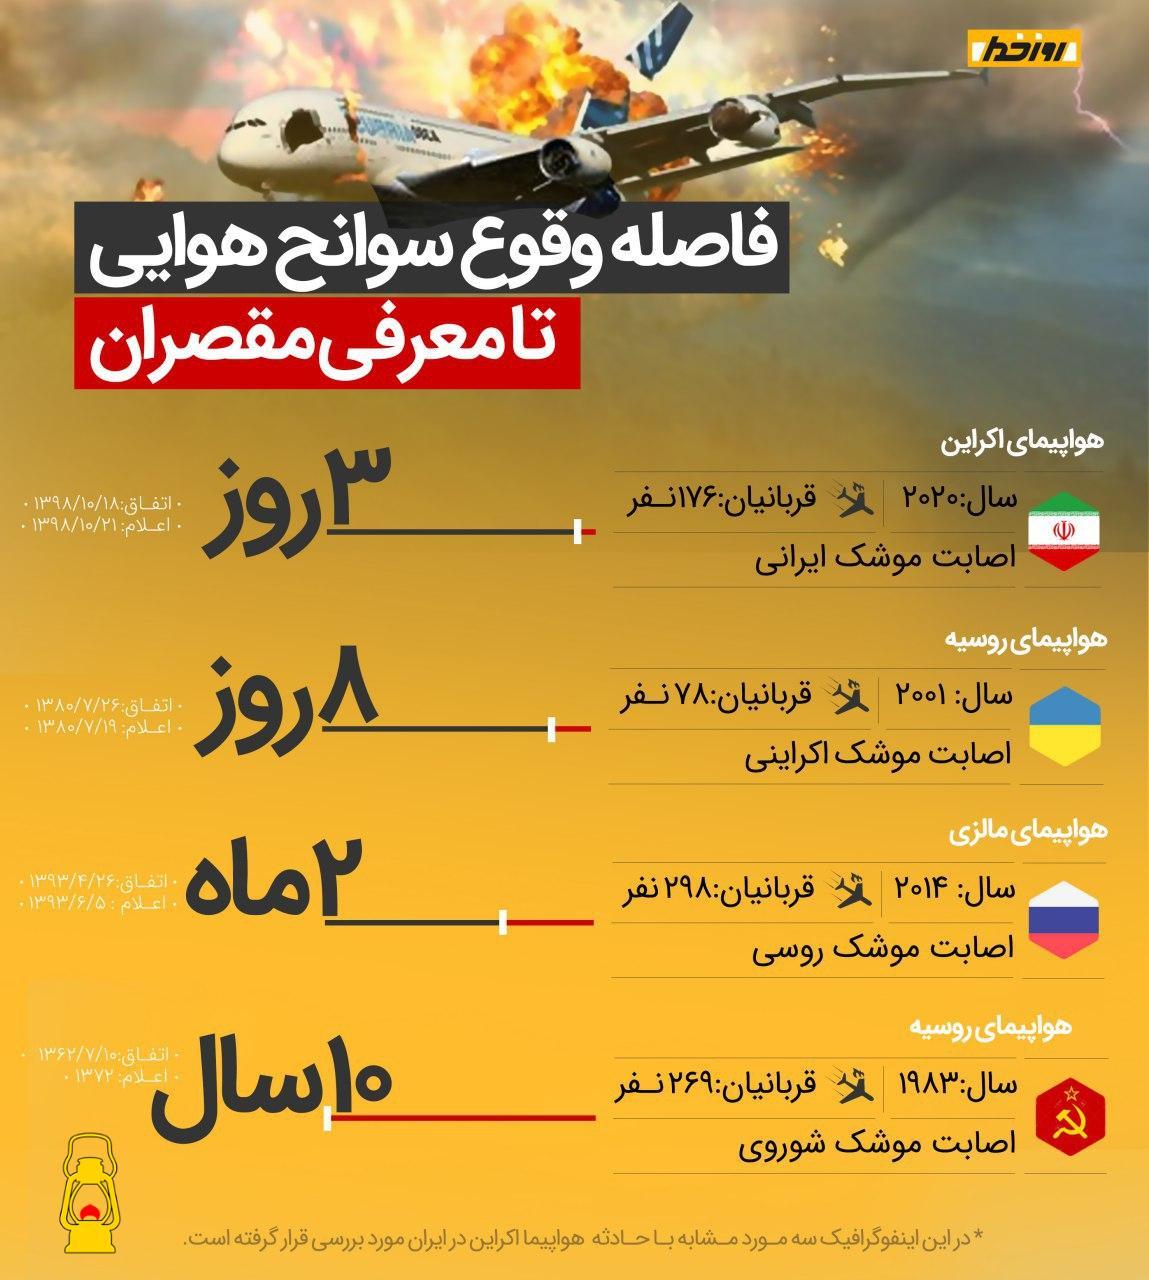 ایران 3 روزه عذر خواهی کرداما مالزی 2ماه و روسیه 10 سال بعد خبر دادند!!